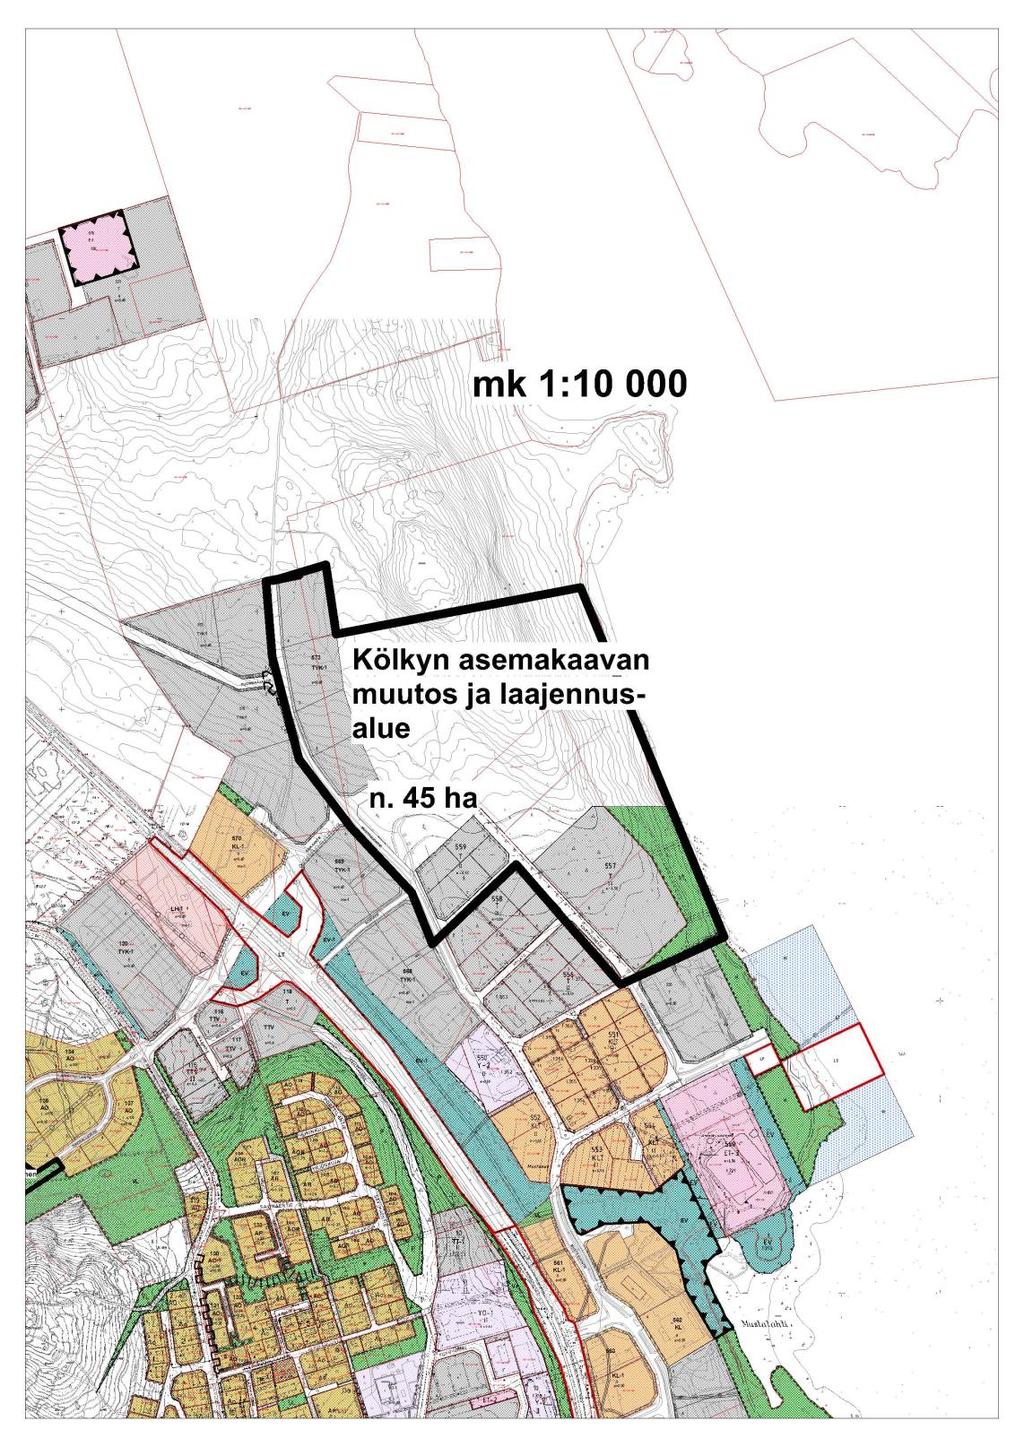 (AIKO) -rahoitusta Haukirinteen alueen uudenlaisen aluekonseptin kehittämiseen.